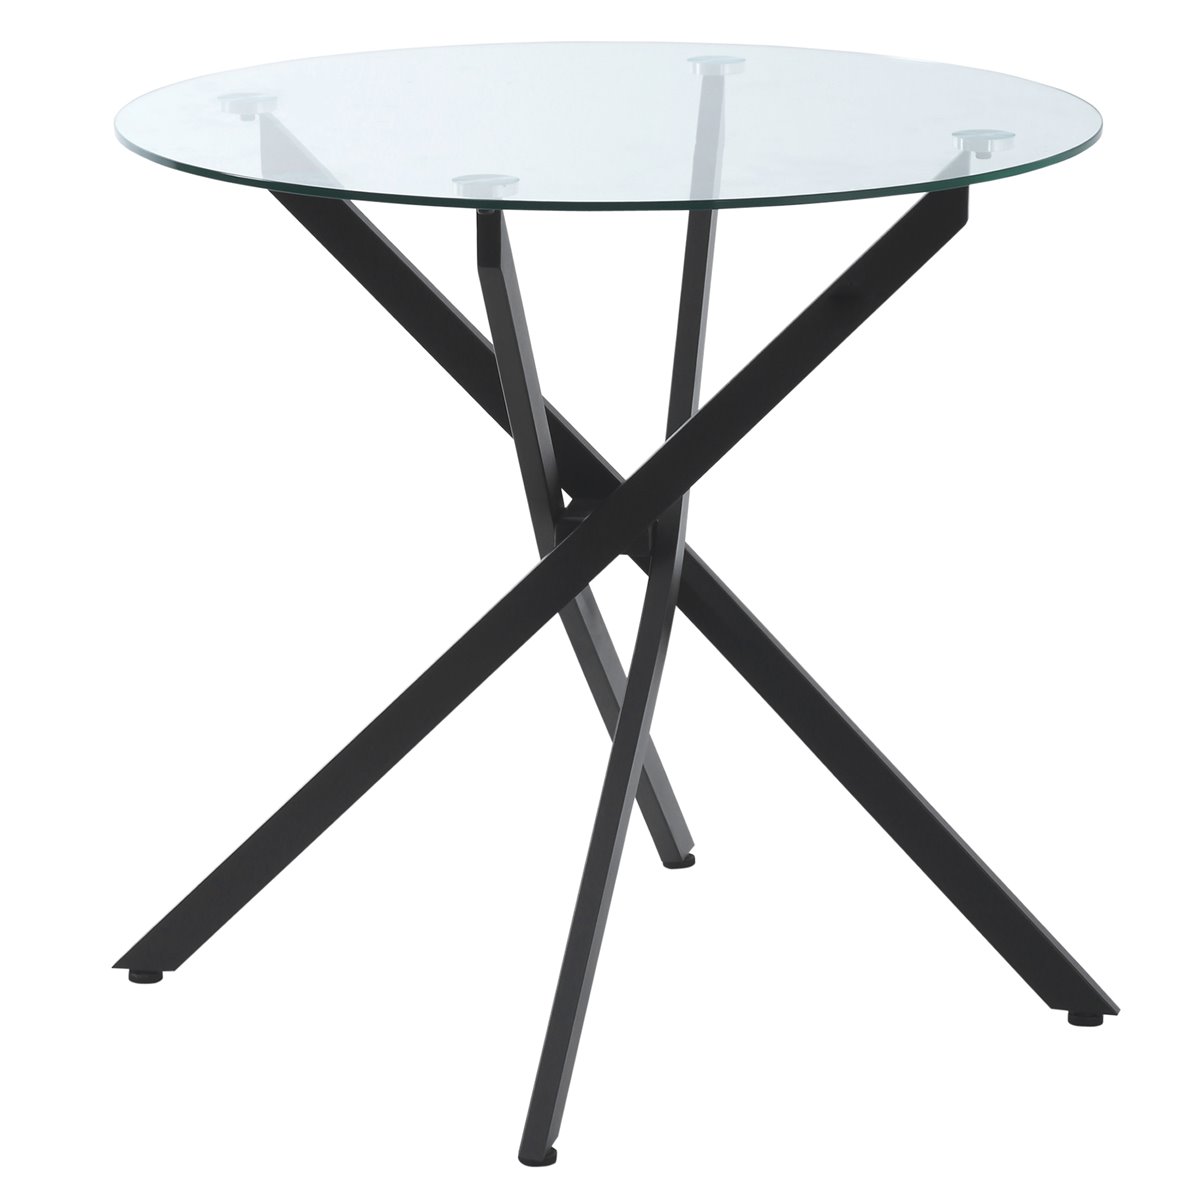 Mesa de centro redonda con patas cruzadas negras de metal